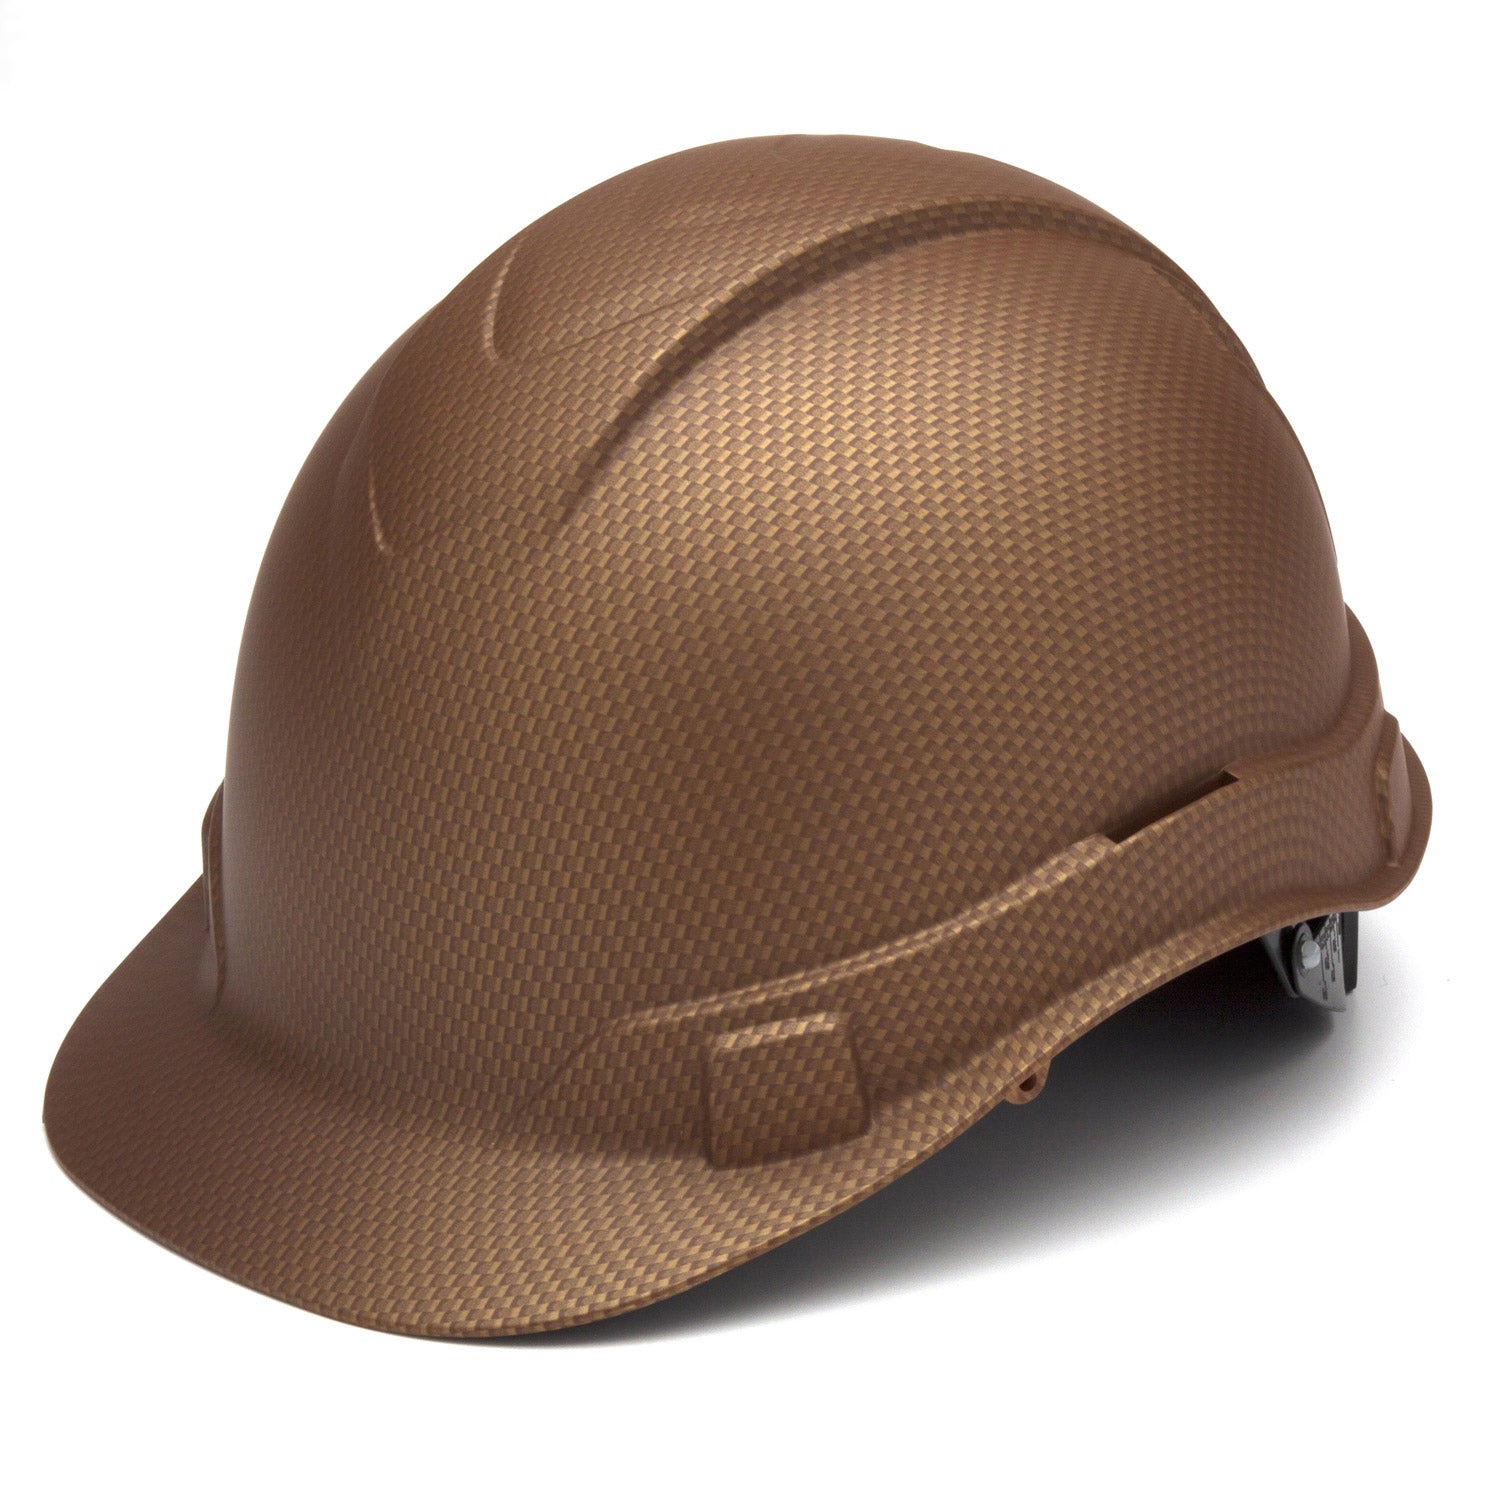 Pyramex Ridgeline® Hydro Dipped Hard Hat - Work World - Workwear, Work Boots, Safety Gear